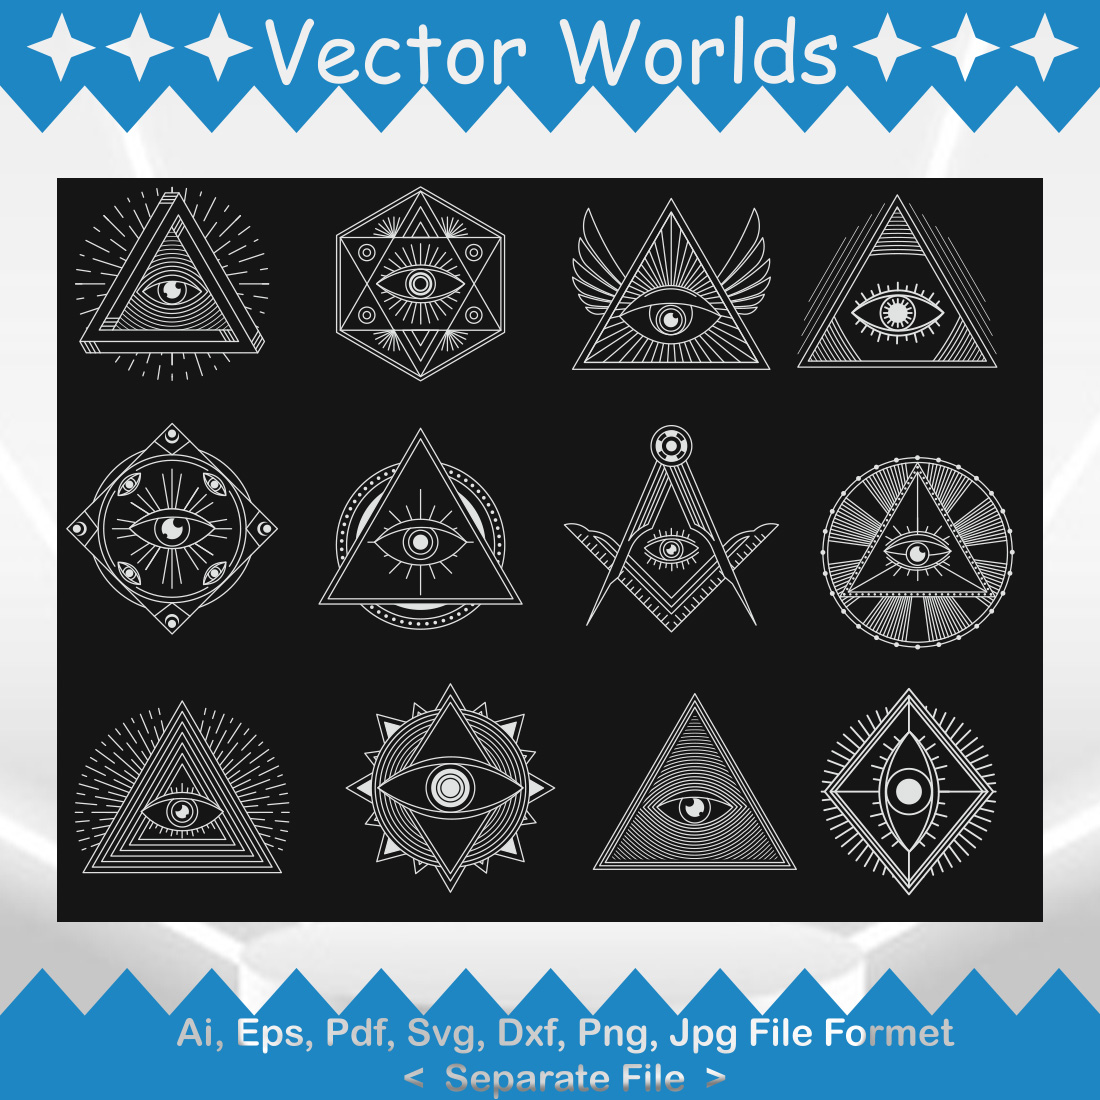 Illuminati sign SVG Vector Design cover image.